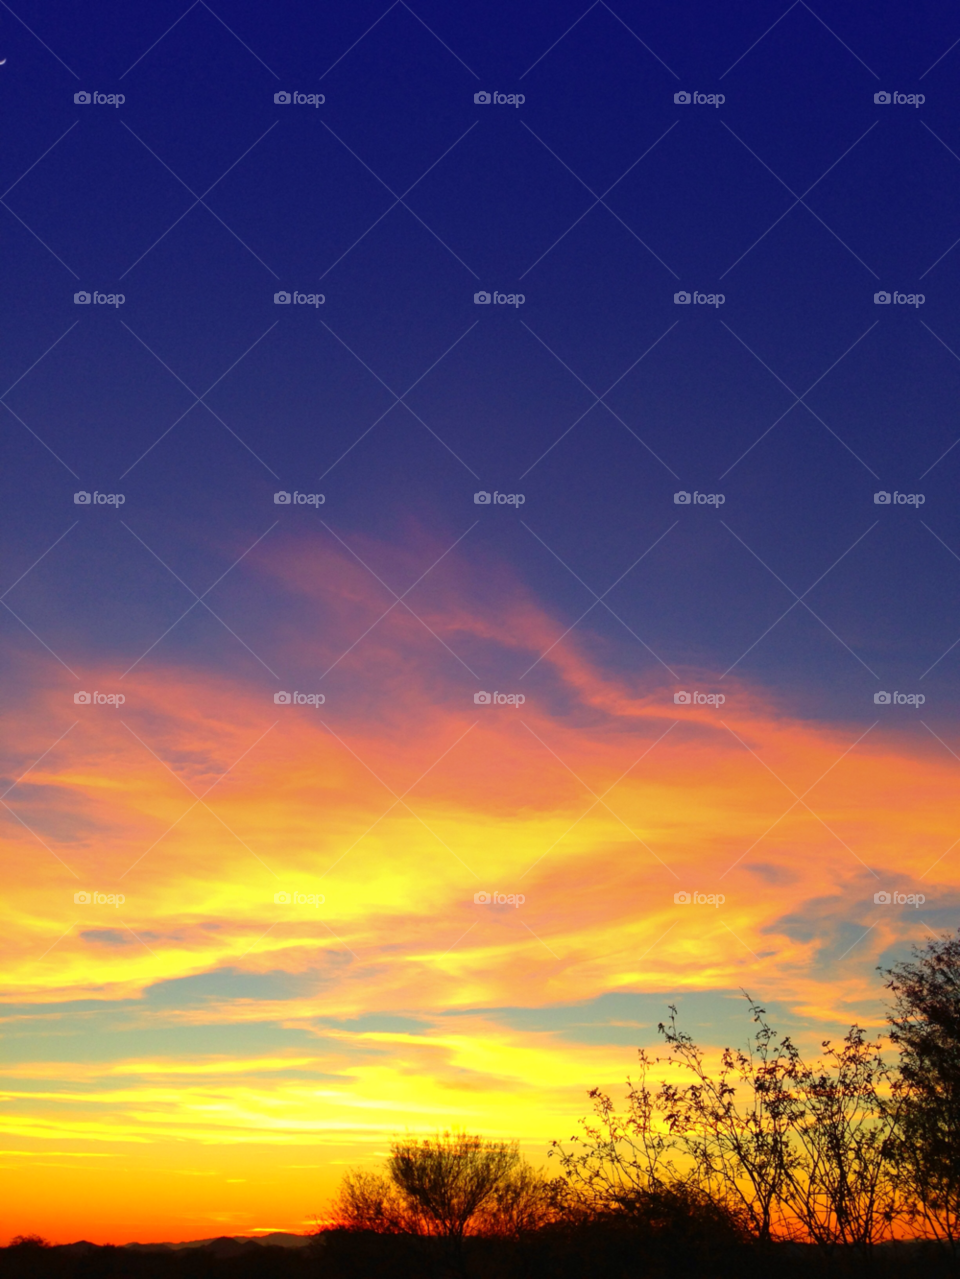 sunset arizona beautiful by melody